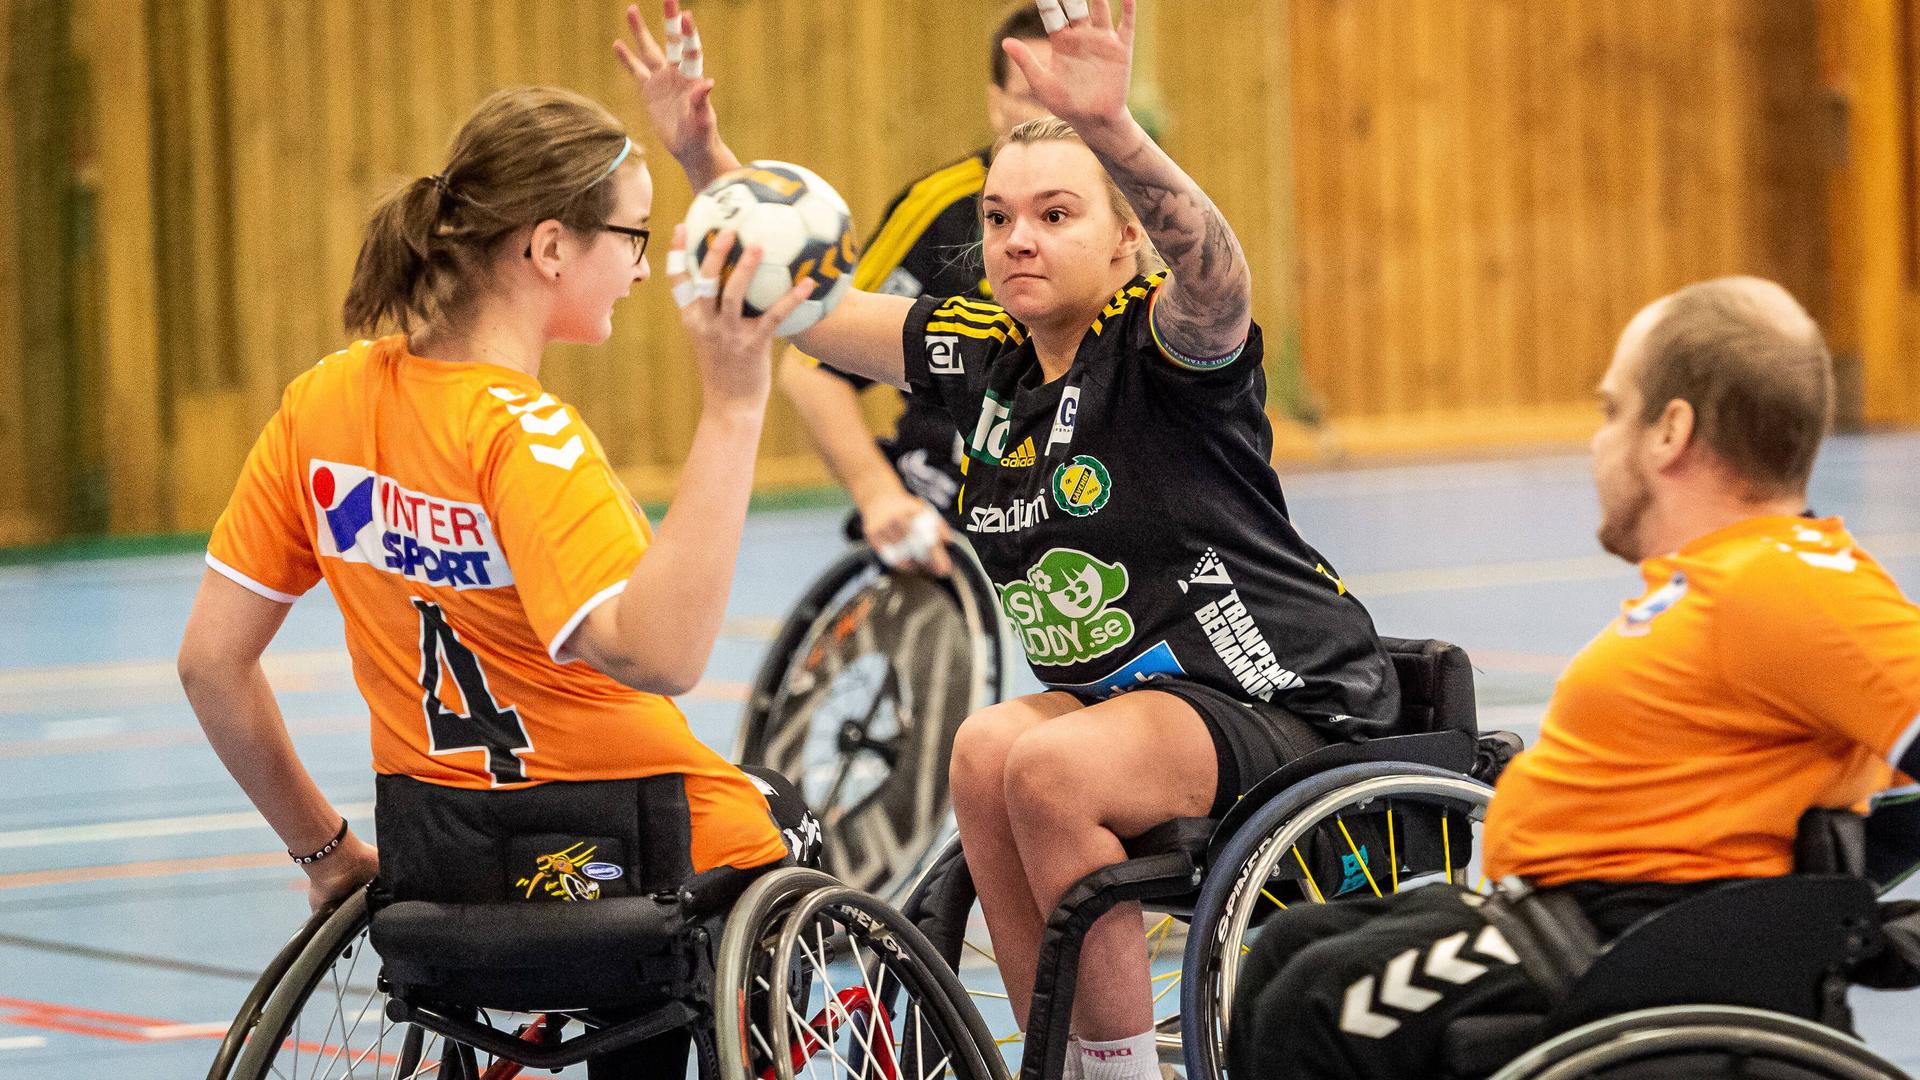 Nachholbedarf: Während Rollstuhl-Handball in vielen europäischen Ländern gespielt wird, wie beispielsweise hier in Norwegen, ist die Sportart in Deutschland noch weitgehend unbekannt.